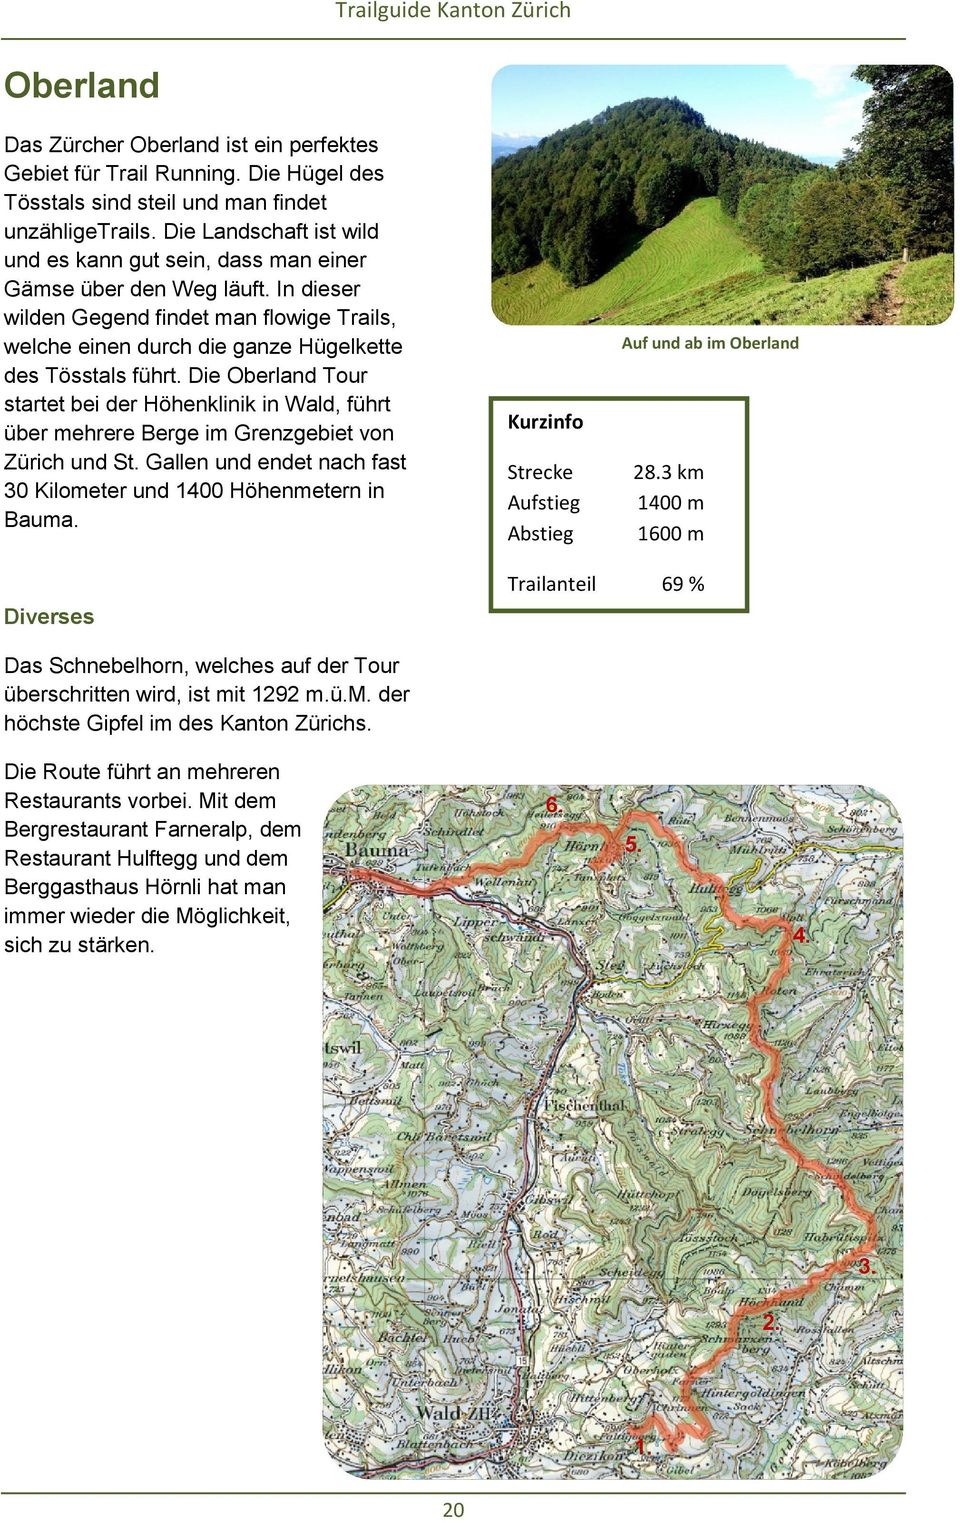 Die Oberland Tour startet bei der Höhenklinik in Wald, führt über mehrere Berge im Grenzgebiet von Zürich und St. Gallen und endet nach fast 30 Kilometer und 1400 Höhenmetern in Bauma.